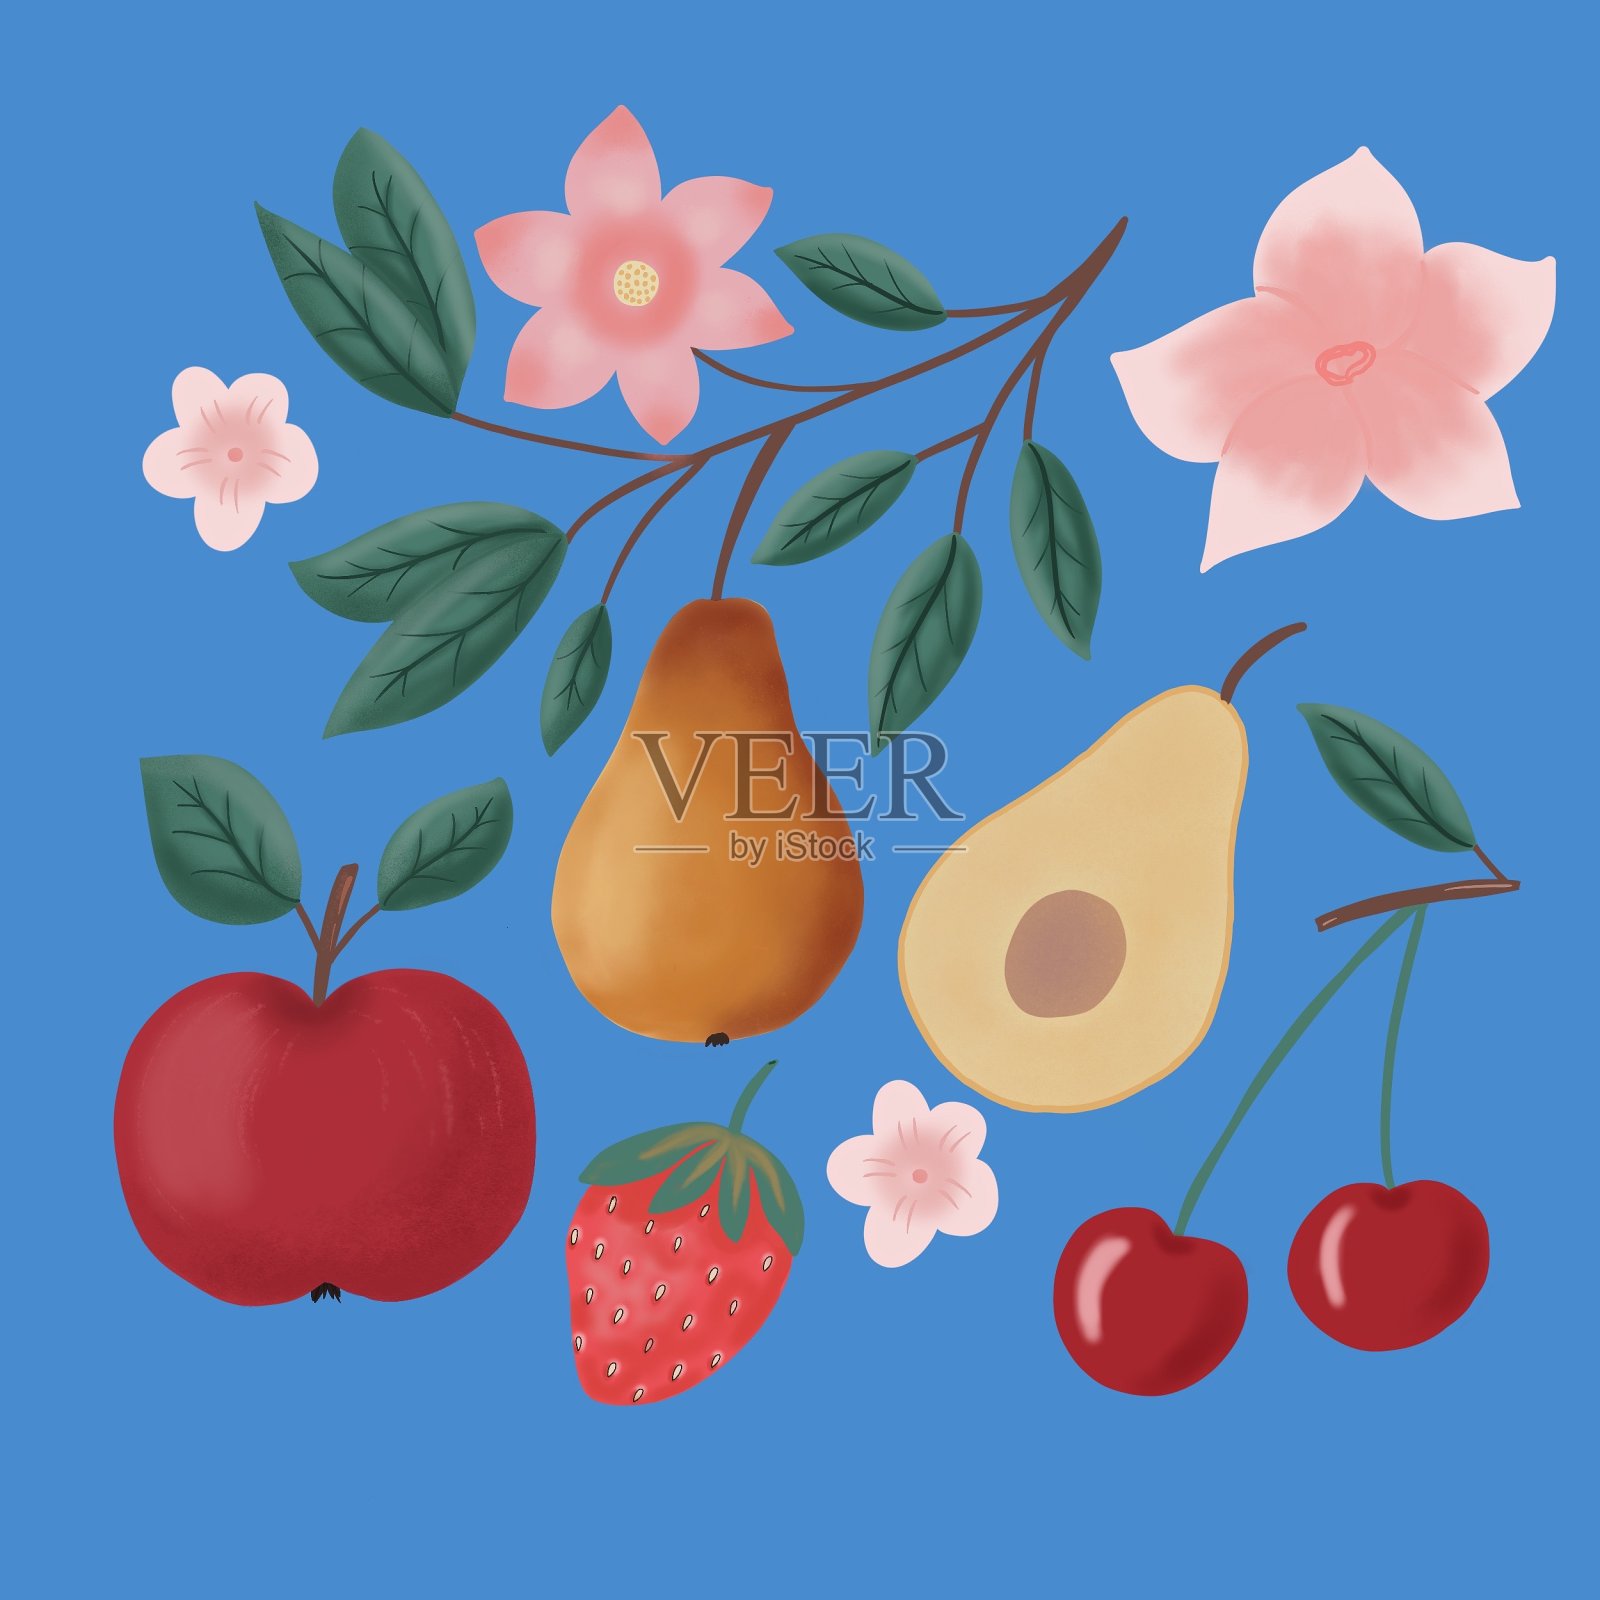 蓝色背景上画着水果和花朵插画图片素材